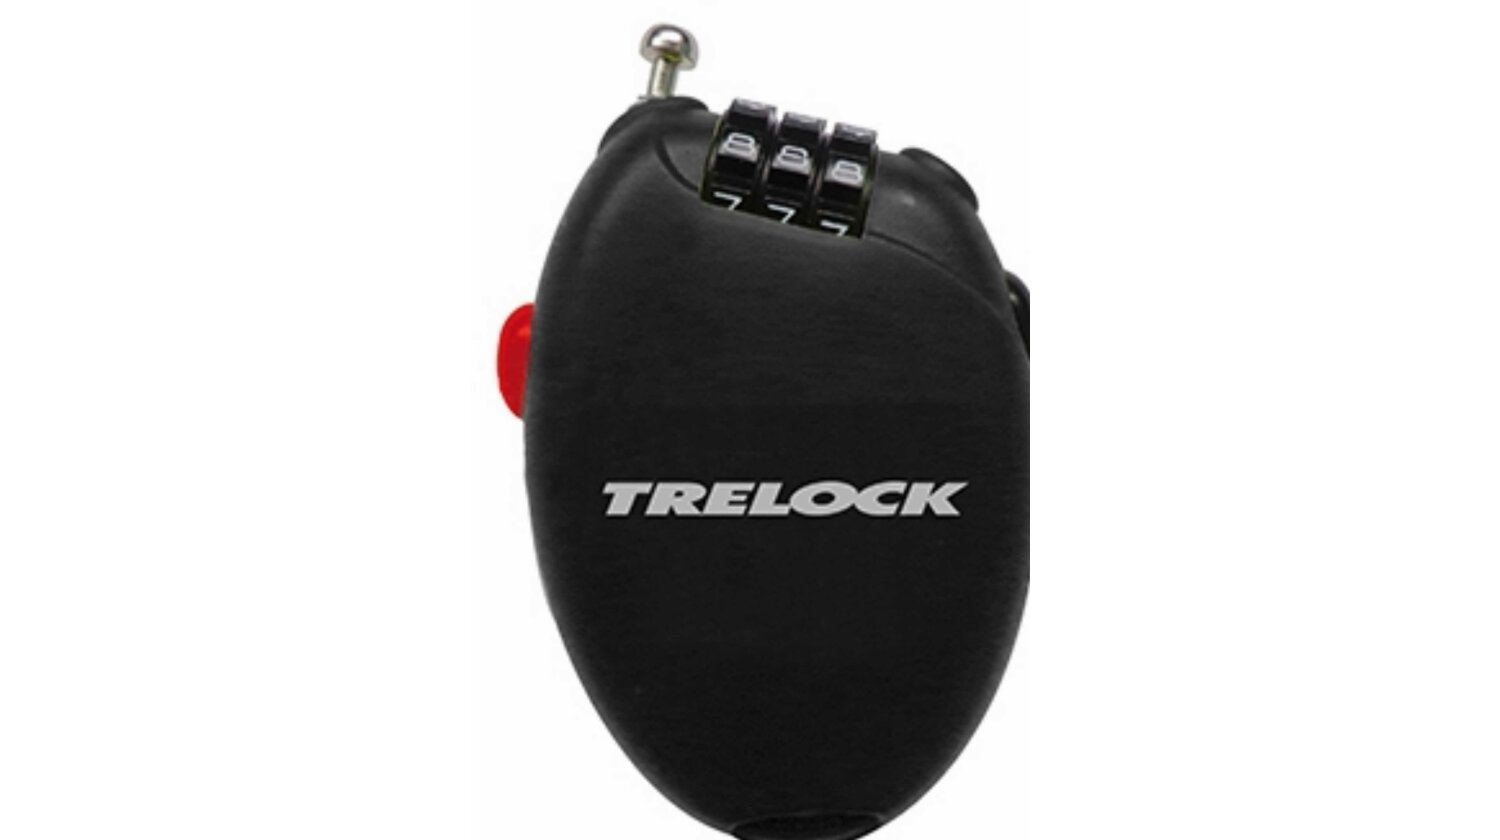 Trelock RK 75 POCKET Herausz. Kabelschloss 3-Stellig schwarz 75 cm